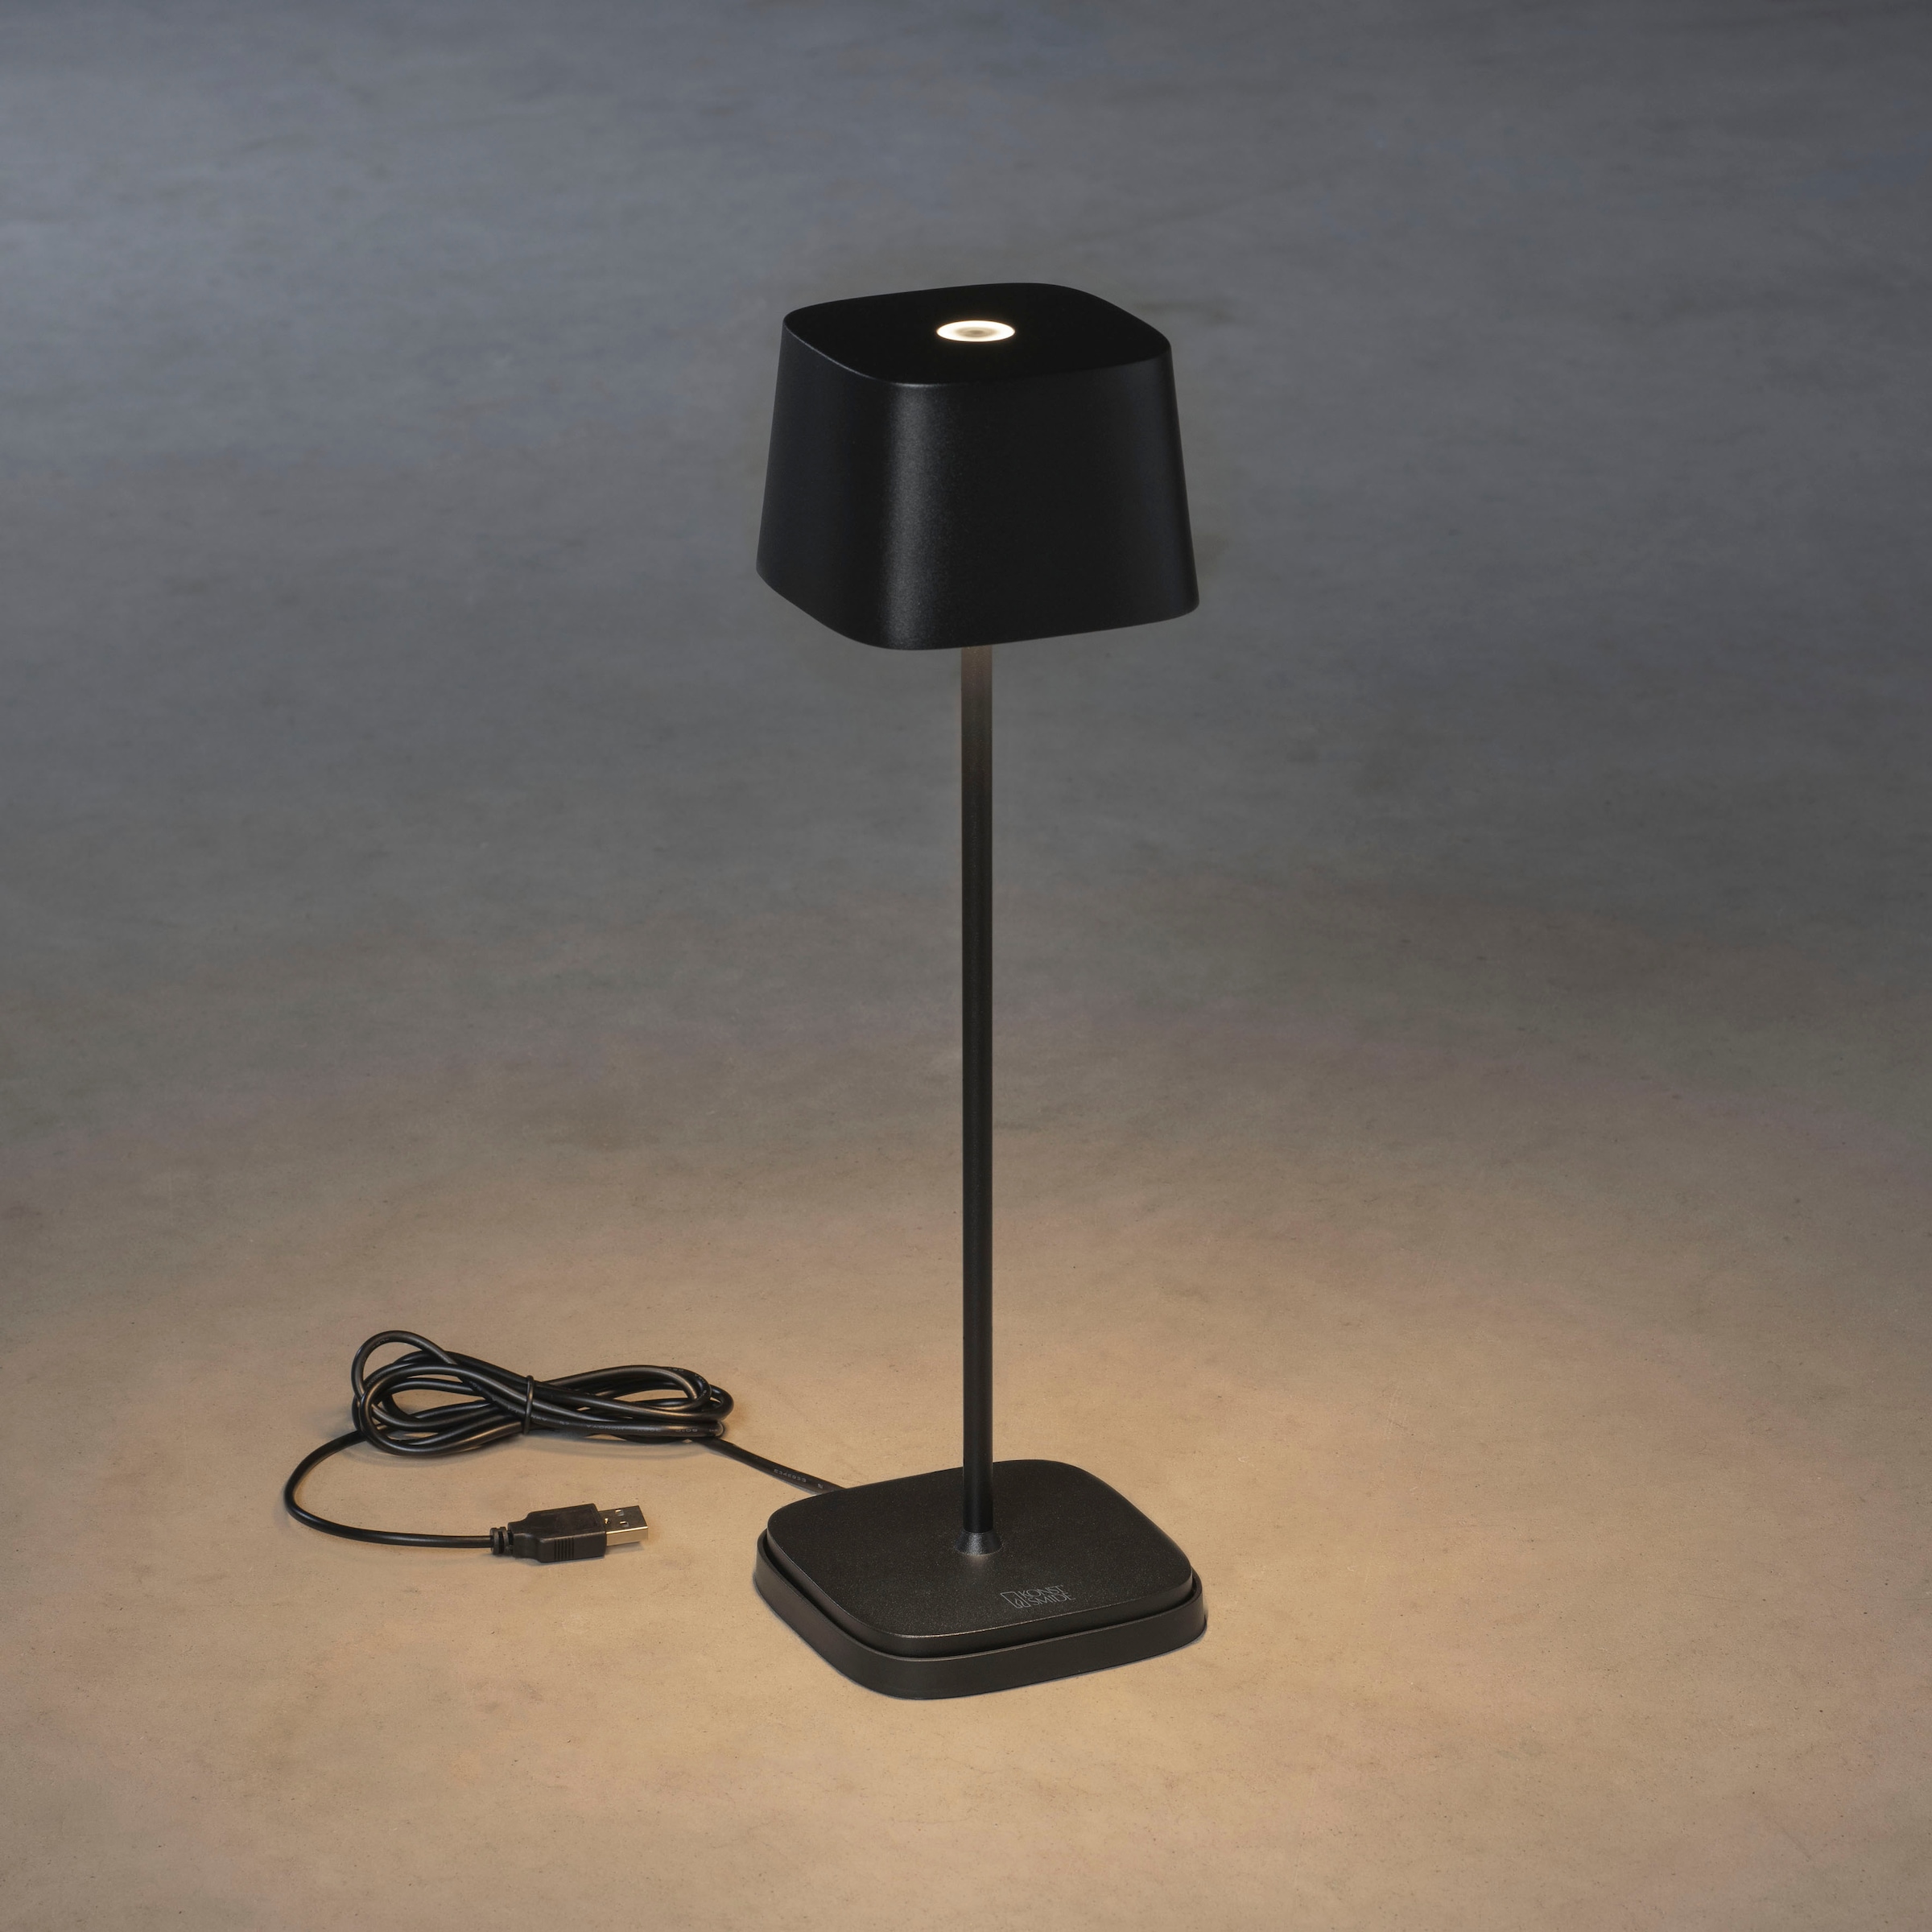 KONSTSMIDE LED Tischleuchte »Capri«, Capri LED USB-Tischleuchte schwarz,  Farbtemperatur, dimmba | günstig kaufen